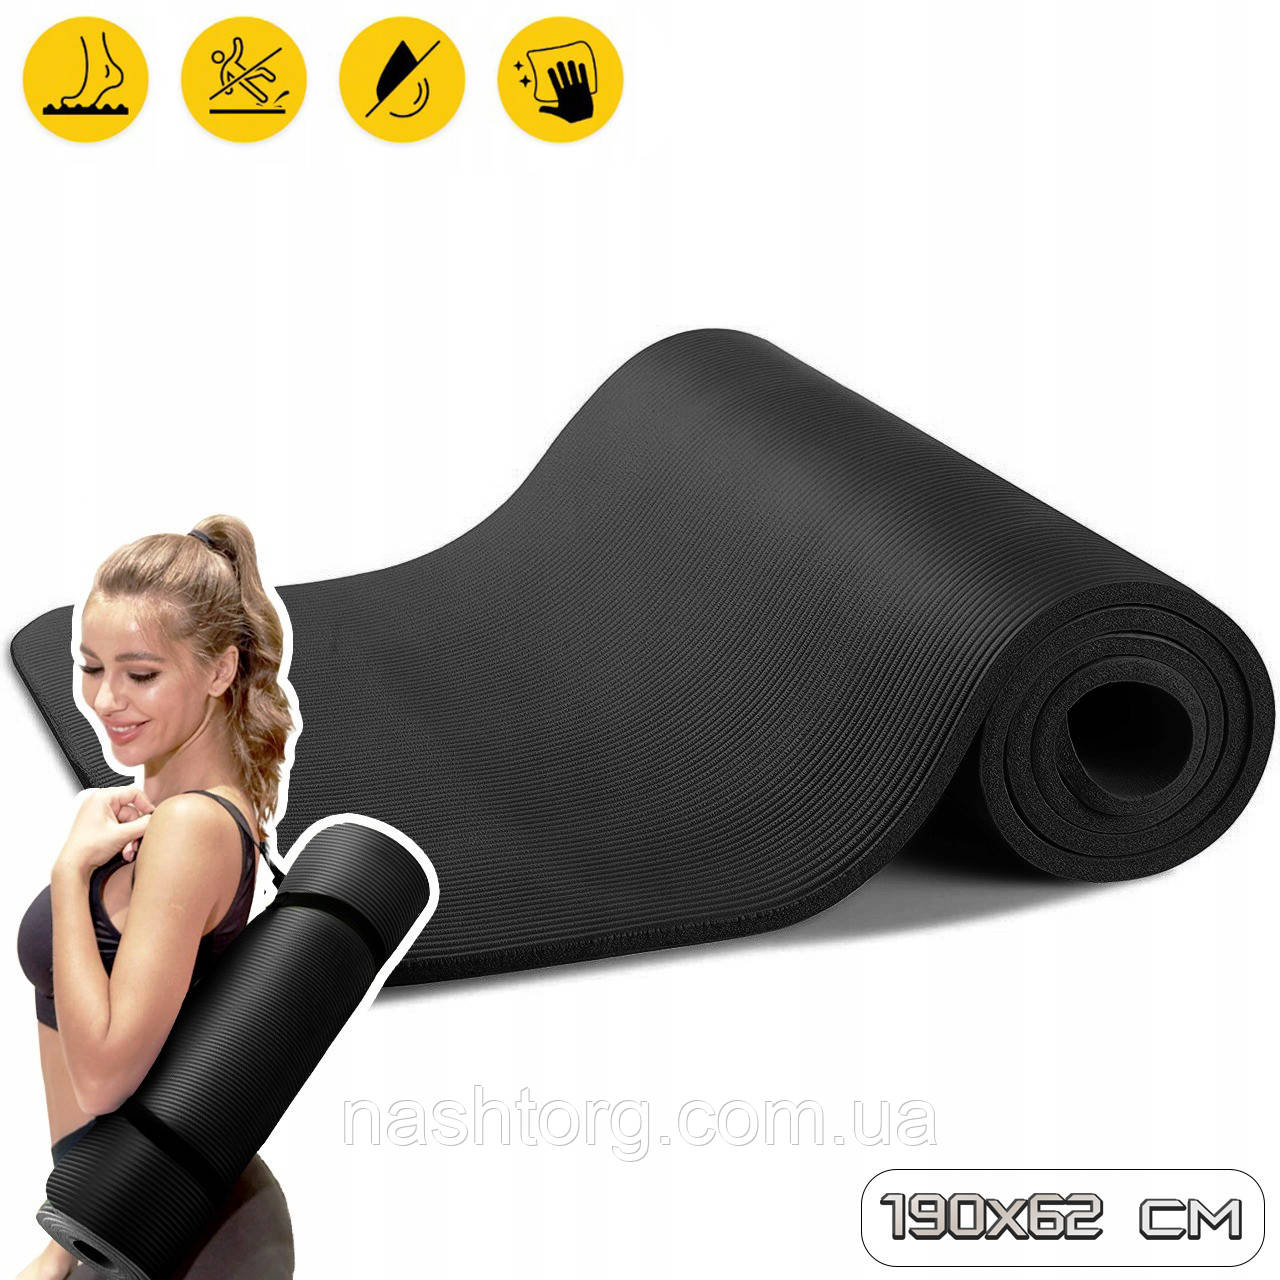 Килимок для фітнесу 15мм (190х62см) Fitness гімнастичний килимок для йоги і пілатесу, для заняття спортом